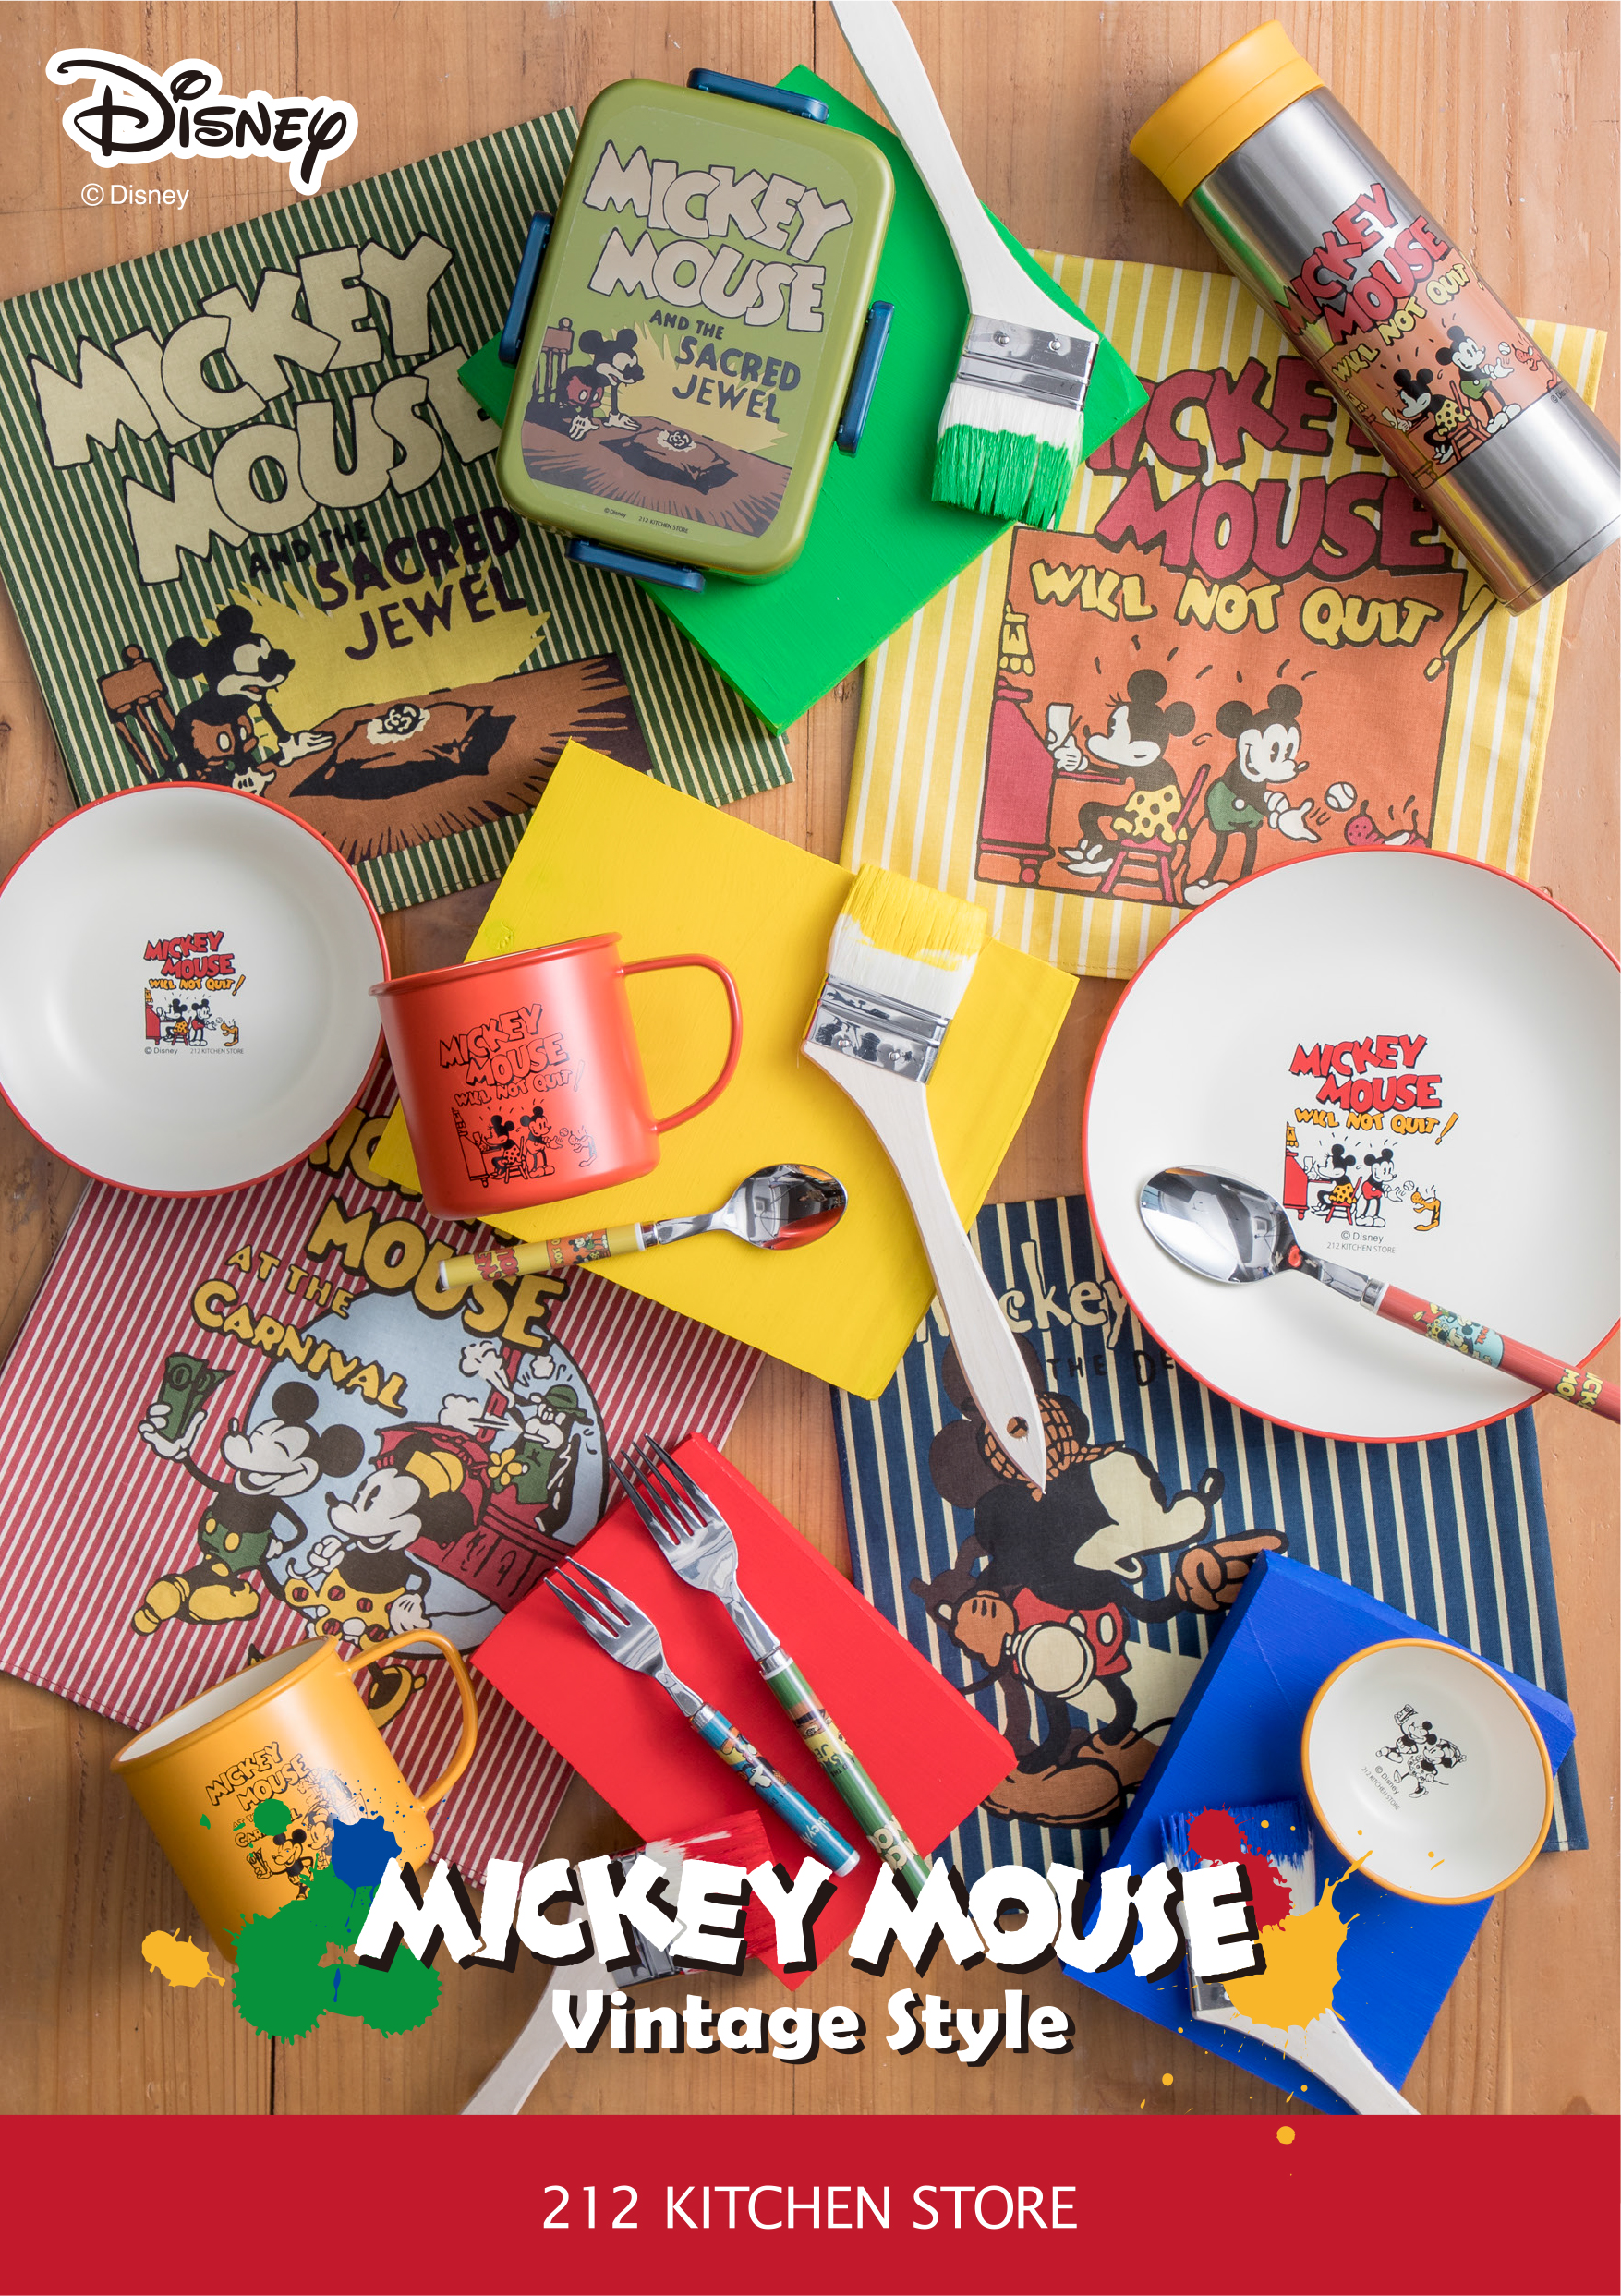 キッチン雑貨専門店の 212キッチンストア からオリジナルアイテム Mickey Mouse ビンテージシリーズ を発売 株式会社アスプルンドのプレスリリース